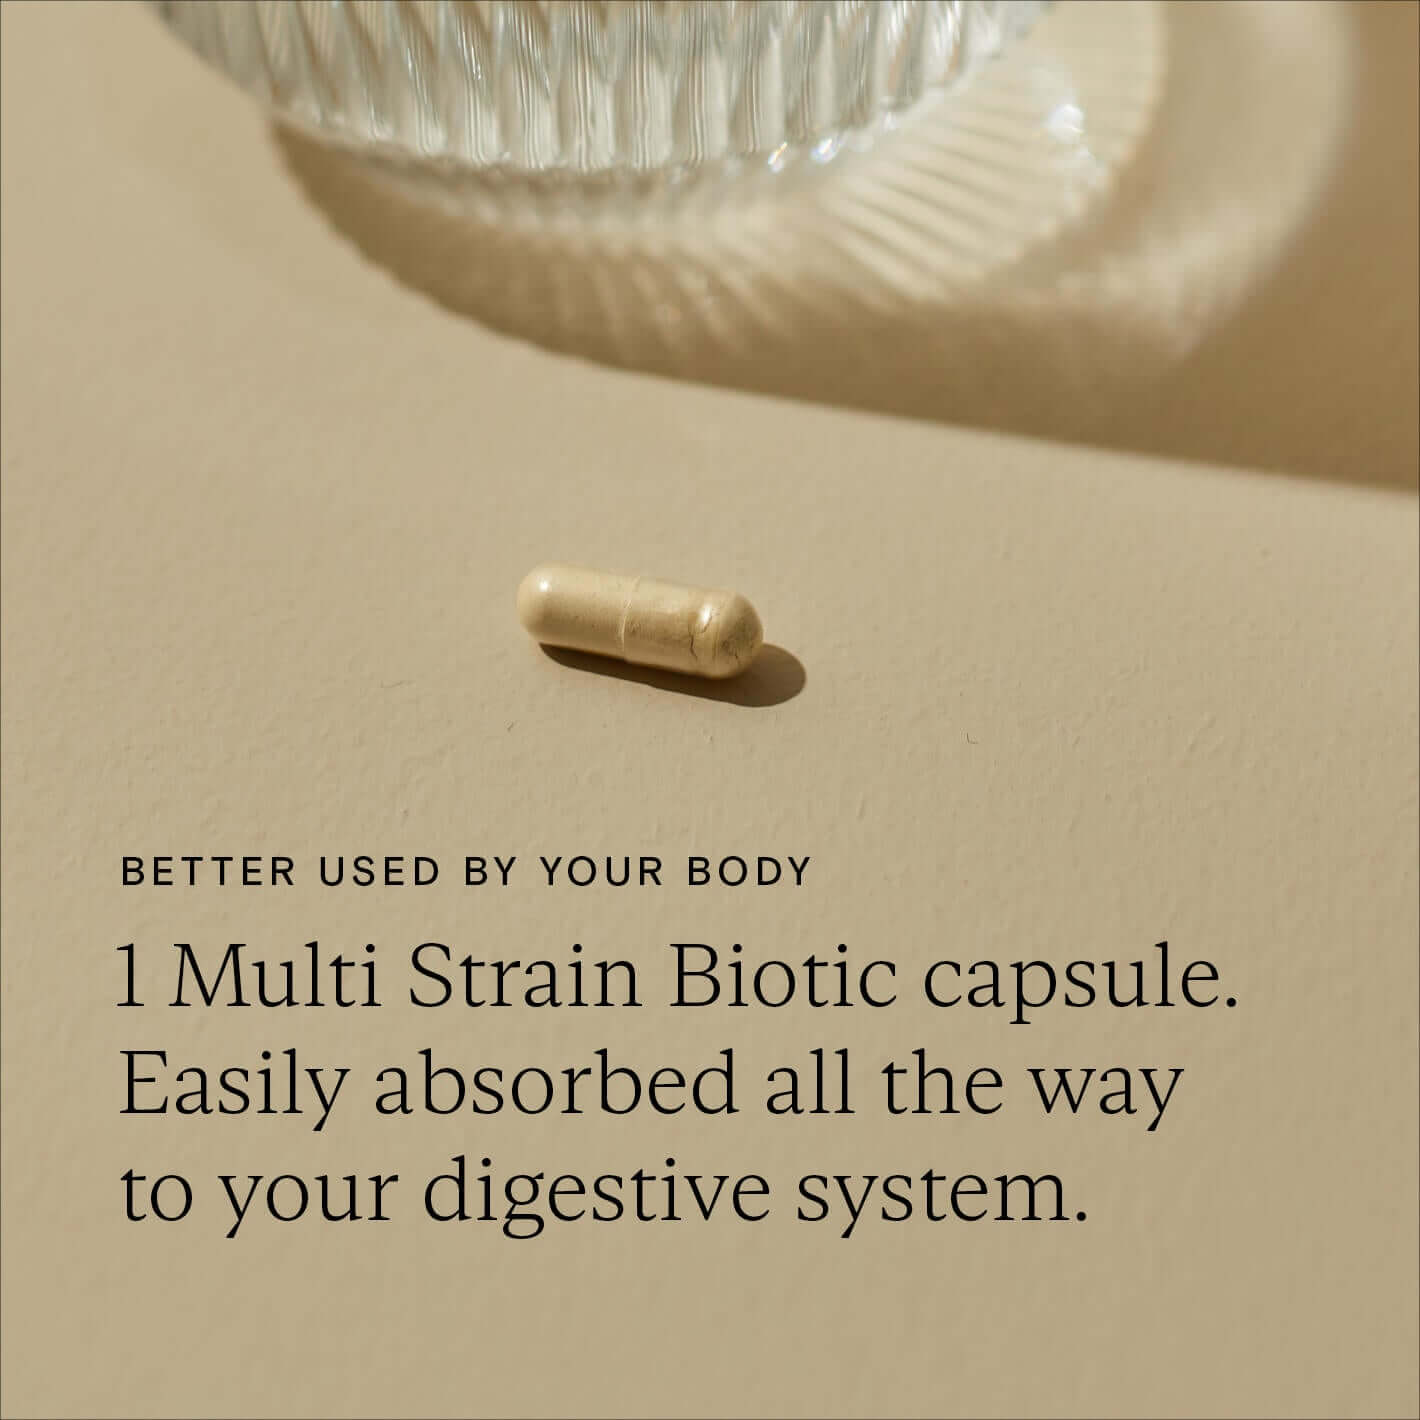 Food-Grown® Multi Strain Biotic